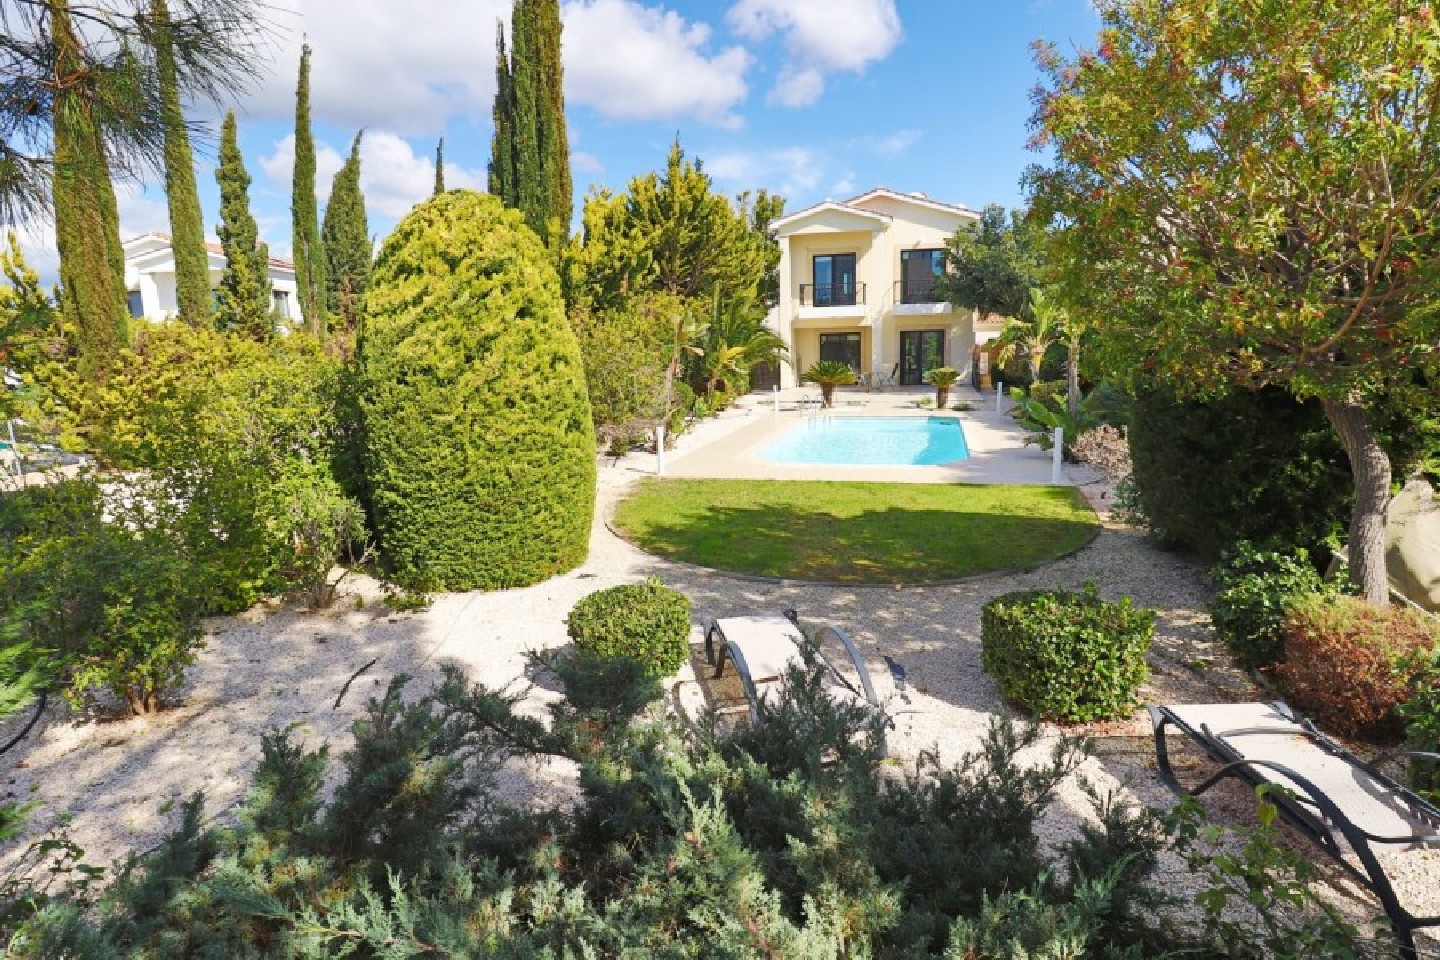 Paphos Kouklia Secret Valley 3 Bedroom Villa For Sale SKR17739